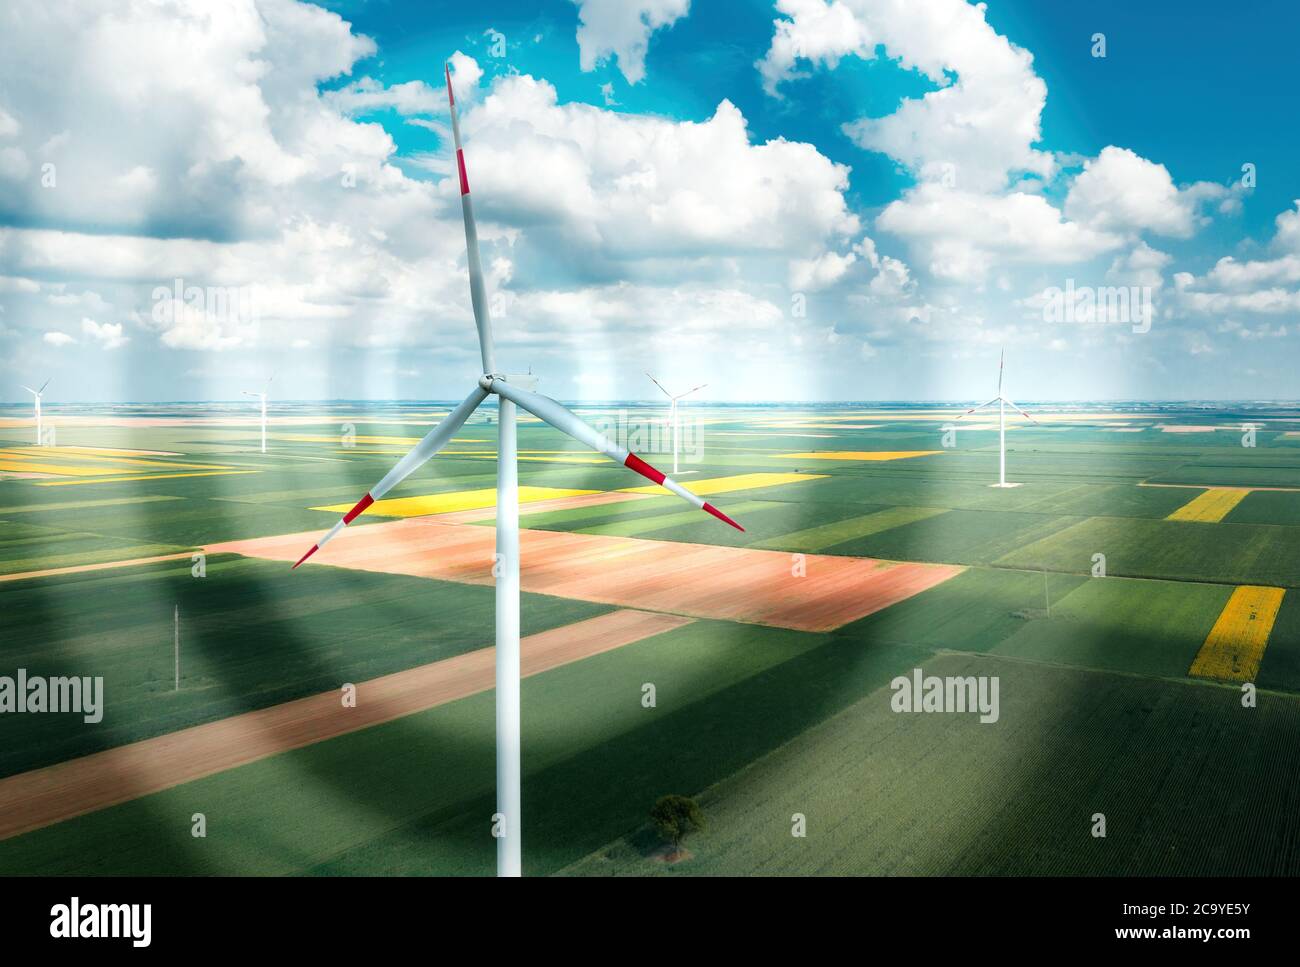 Vista aerea delle turbine eoliche della moderna azienda eolica dal drone pov, immagine digitale migliorata visione ad alto angolo di risorse sostenibili innovative technolo Foto Stock